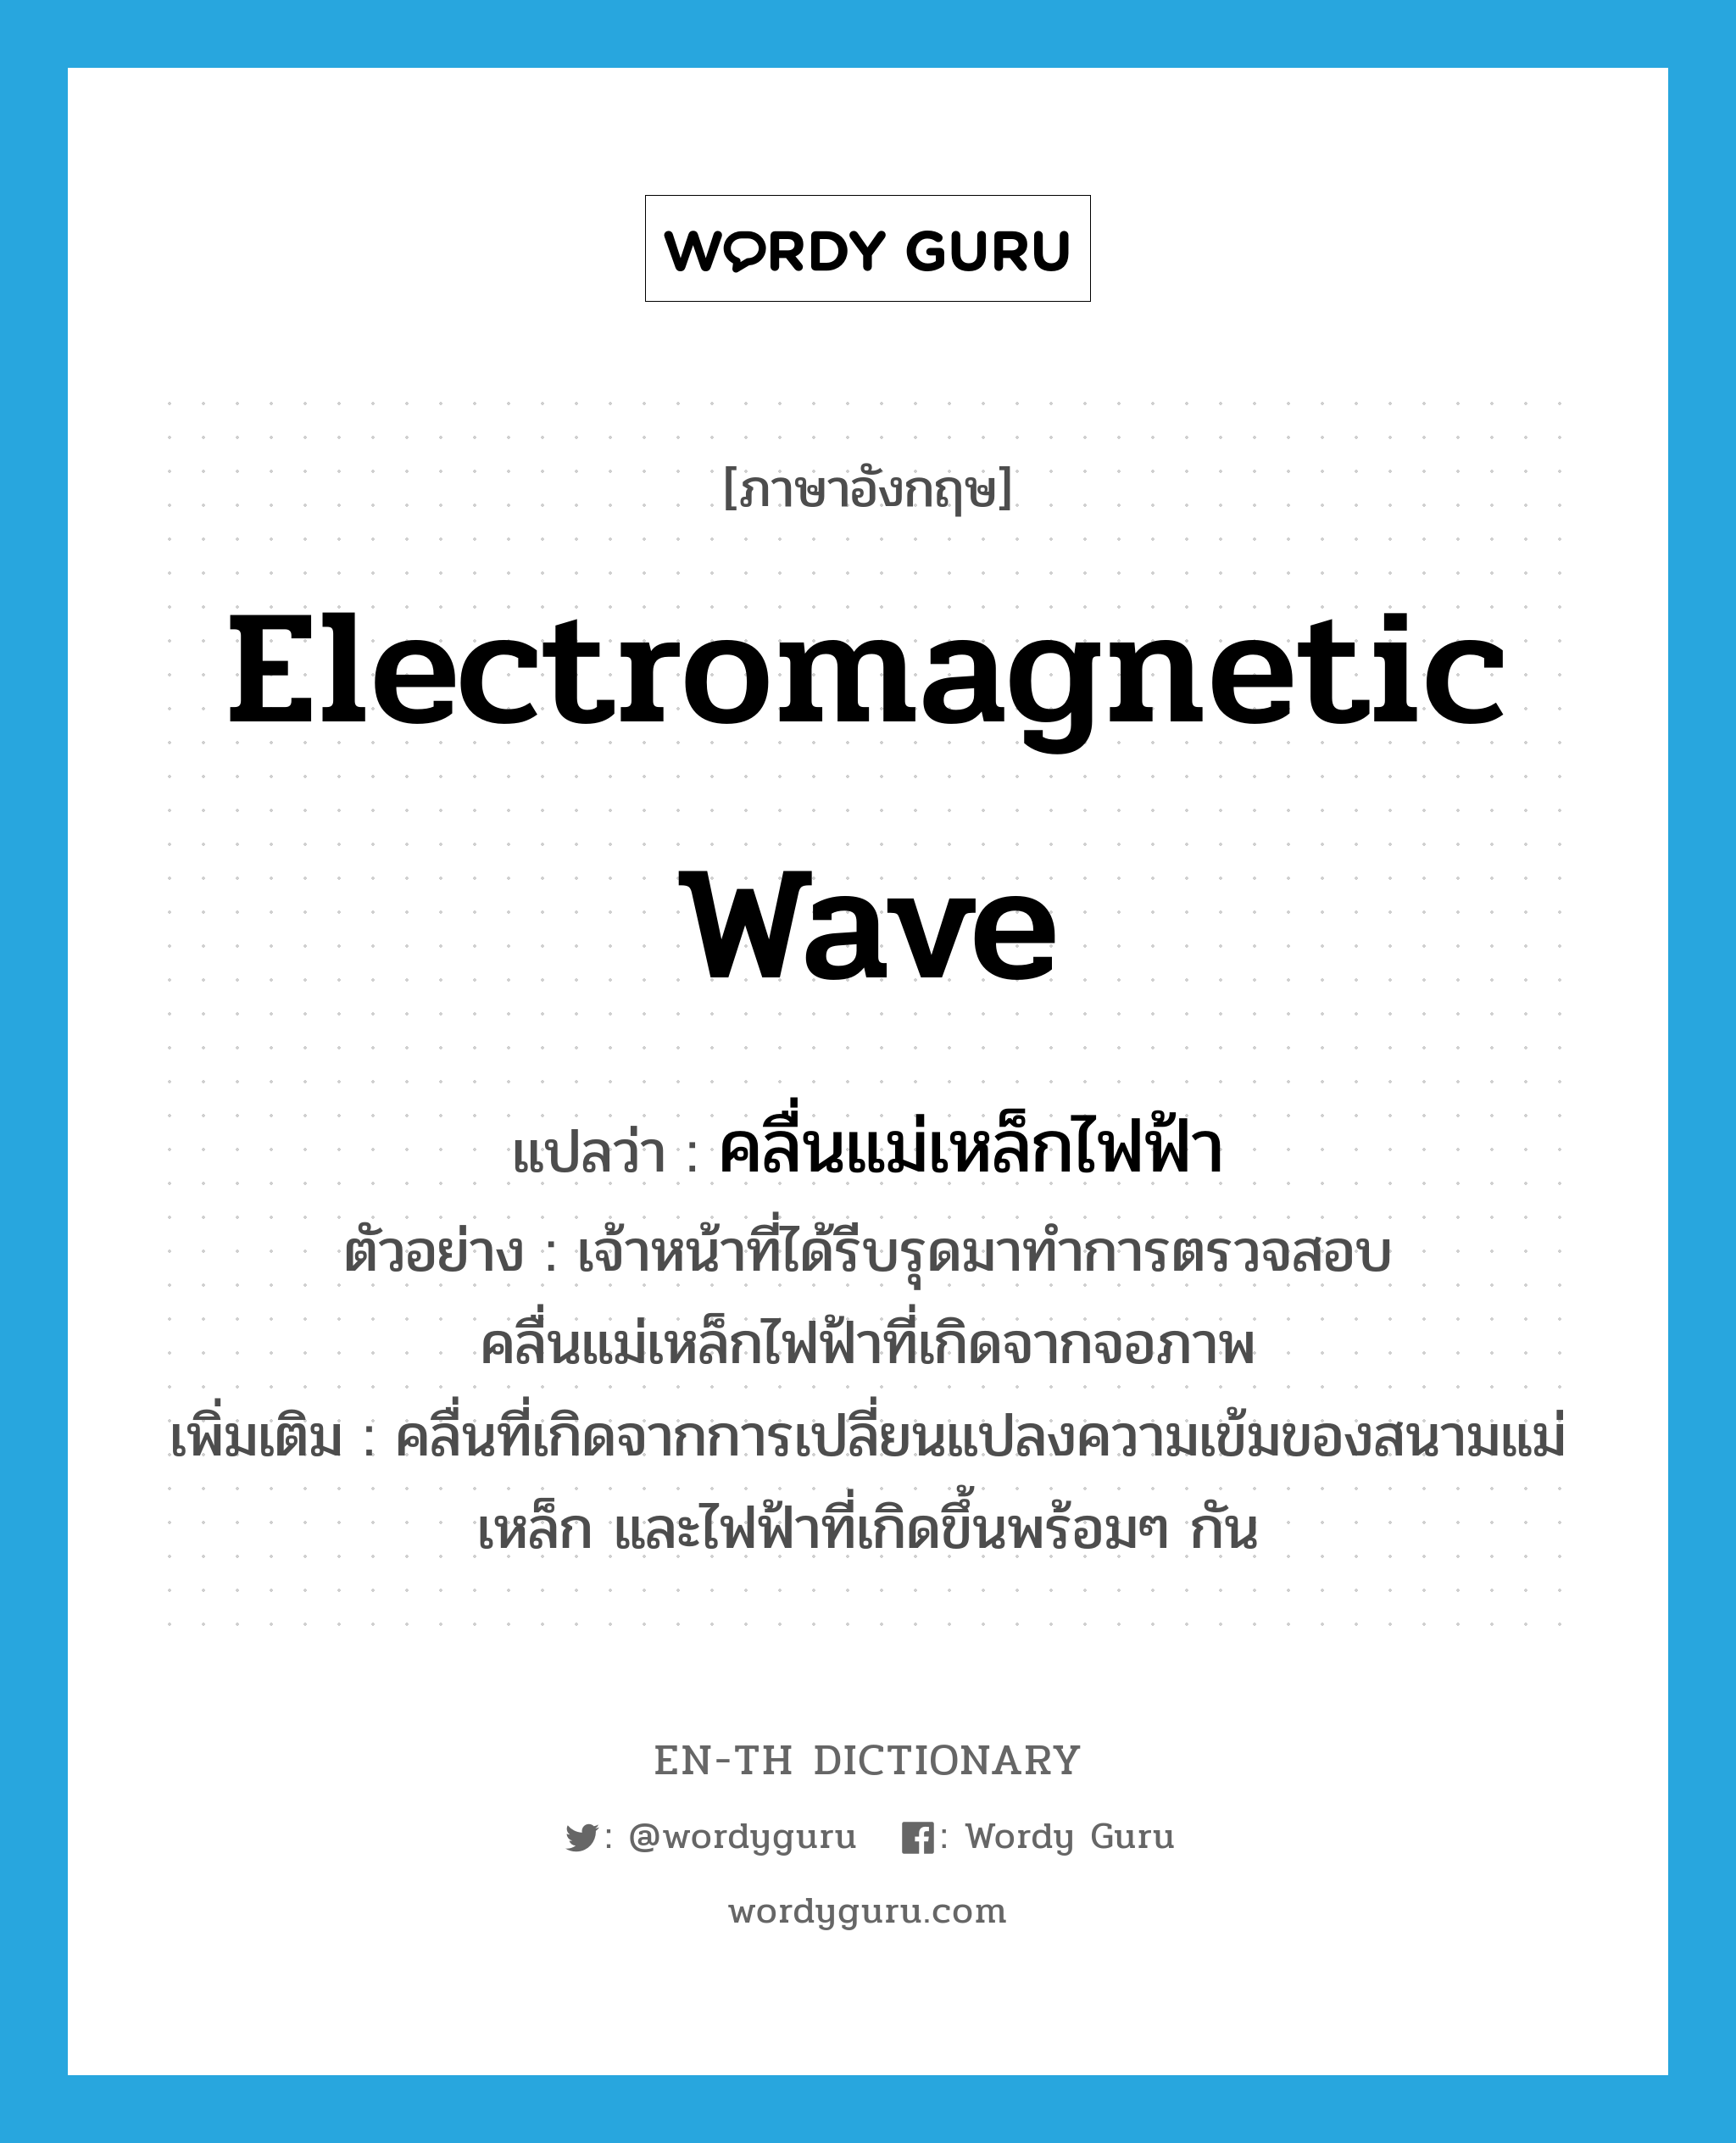 electromagnetic wave แปลว่า?, คำศัพท์ภาษาอังกฤษ electromagnetic wave แปลว่า คลื่นแม่เหล็กไฟฟ้า ประเภท N ตัวอย่าง เจ้าหน้าที่ได้รีบรุดมาทำการตรวจสอบคลื่นแม่เหล็กไฟฟ้าที่เกิดจากจอภาพ เพิ่มเติม คลื่นที่เกิดจากการเปลี่ยนแปลงความเข้มของสนามแม่เหล็ก และไฟฟ้าที่เกิดขึ้นพร้อมๆ กัน หมวด N